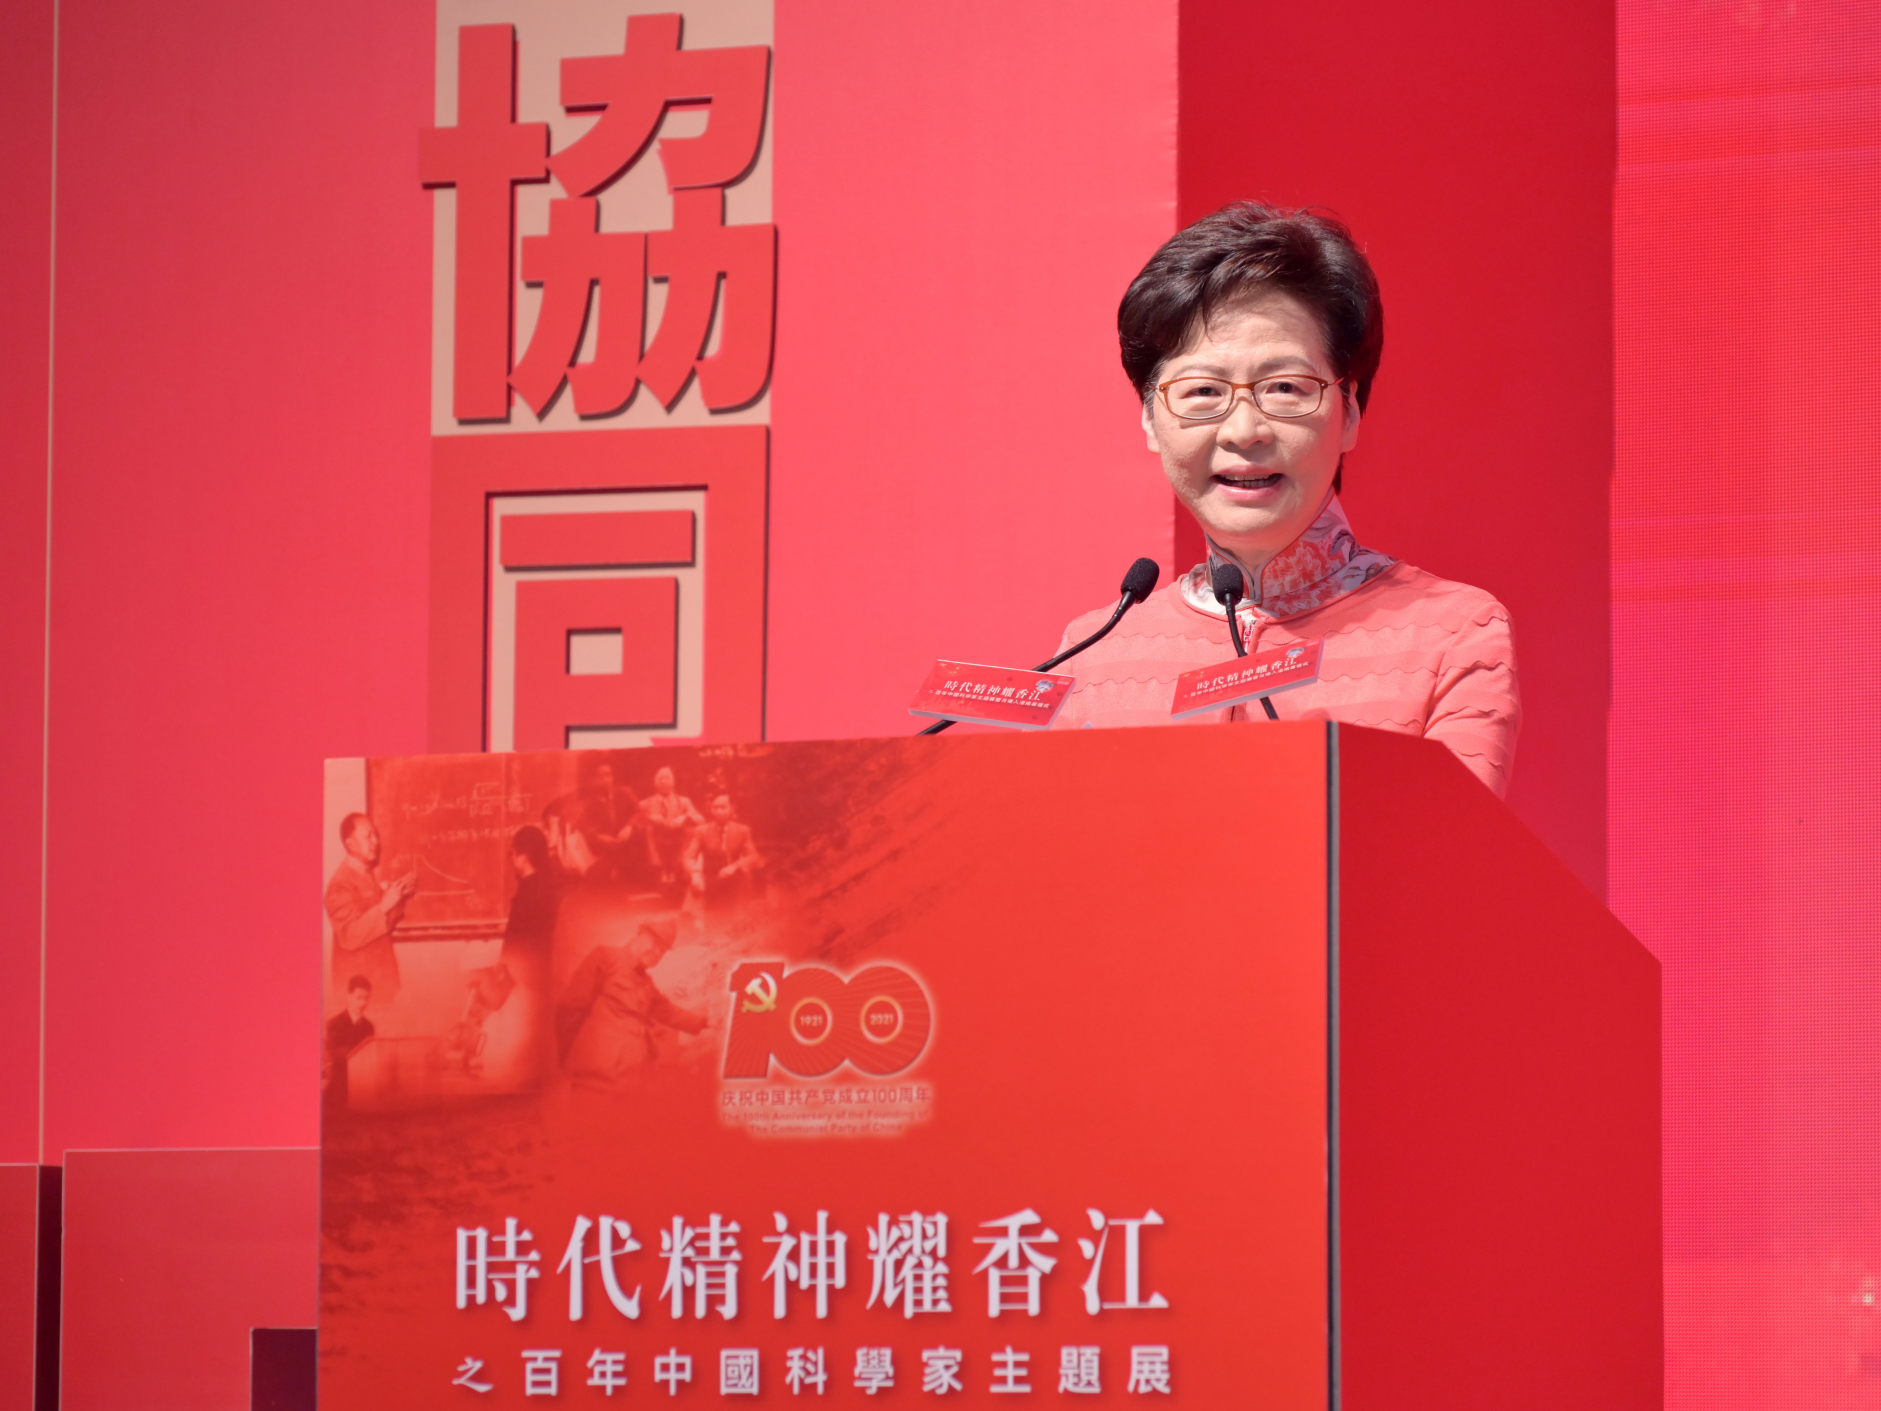 香港举办中国科学家主题展暨月壤入港揭幕